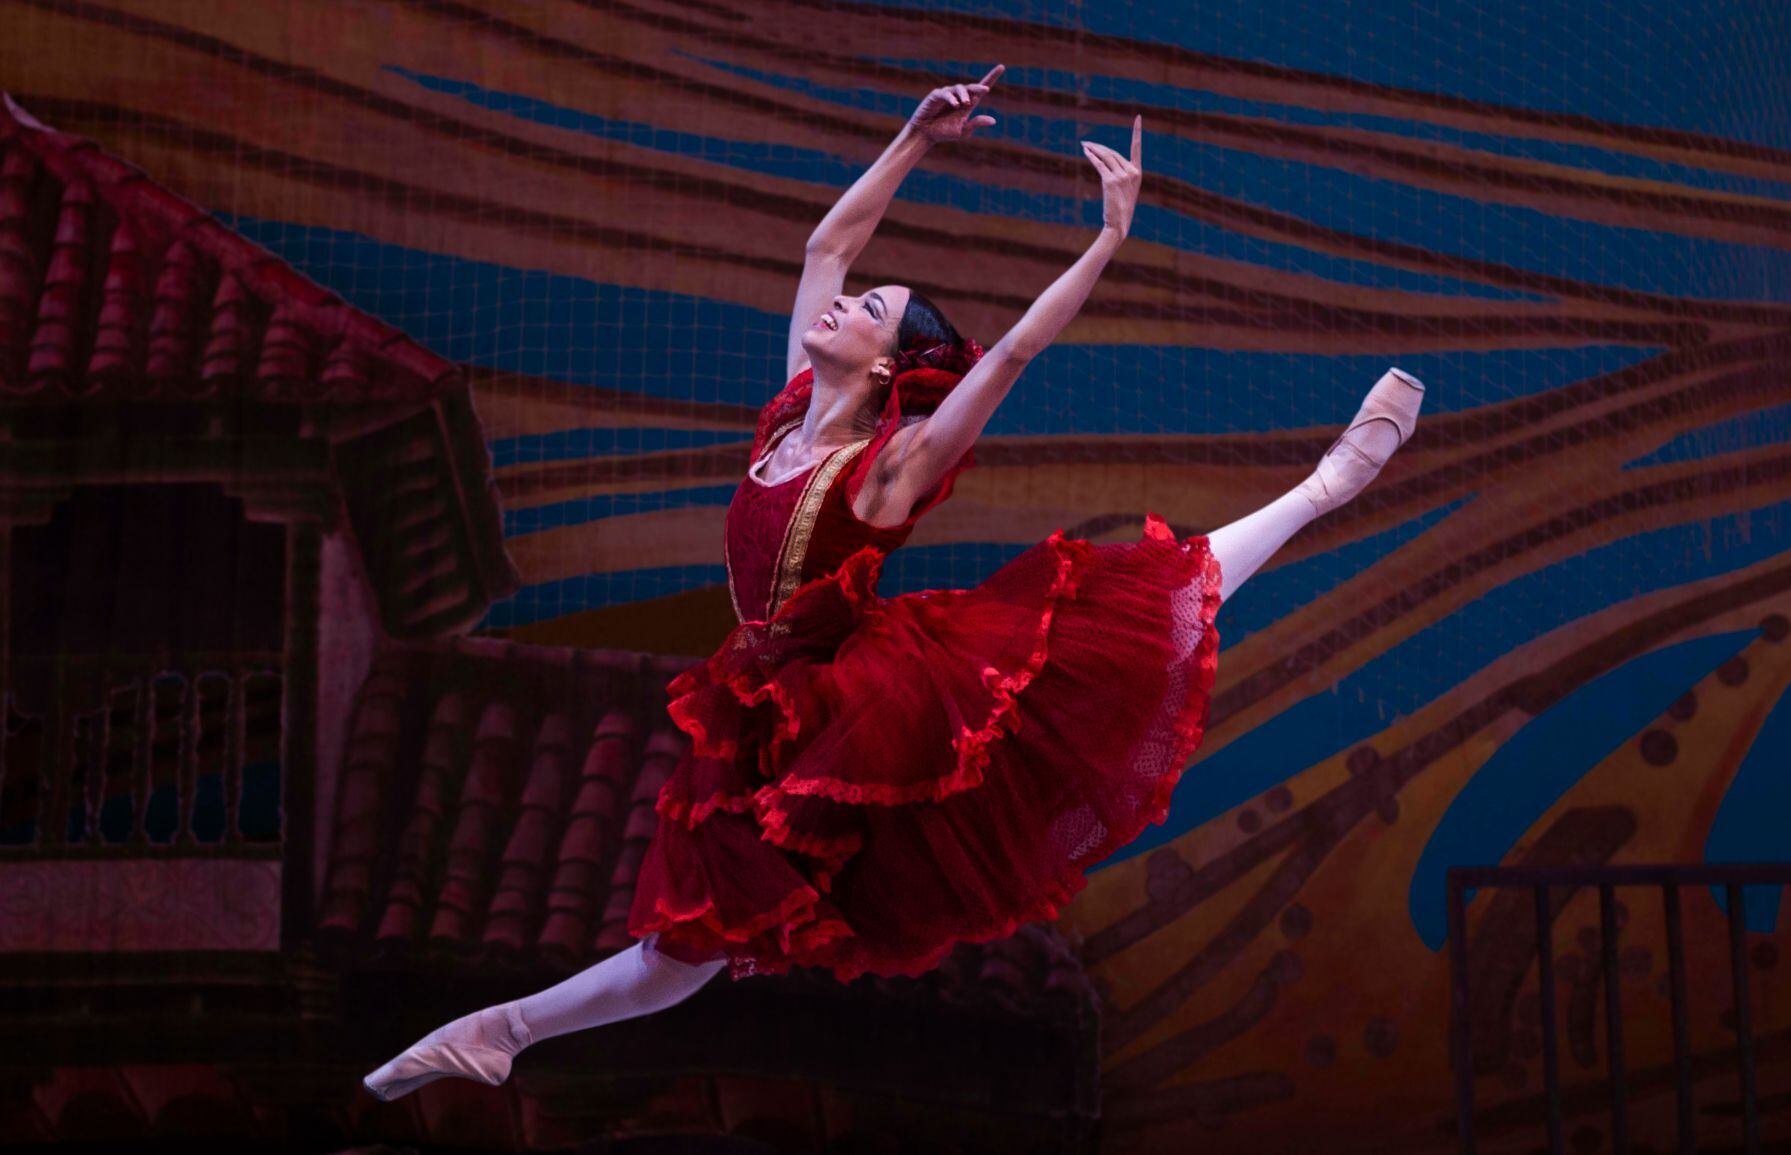 El Ballet Nacional de Cuba nació en 1948 de la mano de Alicia Alonso, quien fue su primerísima figura y directora.